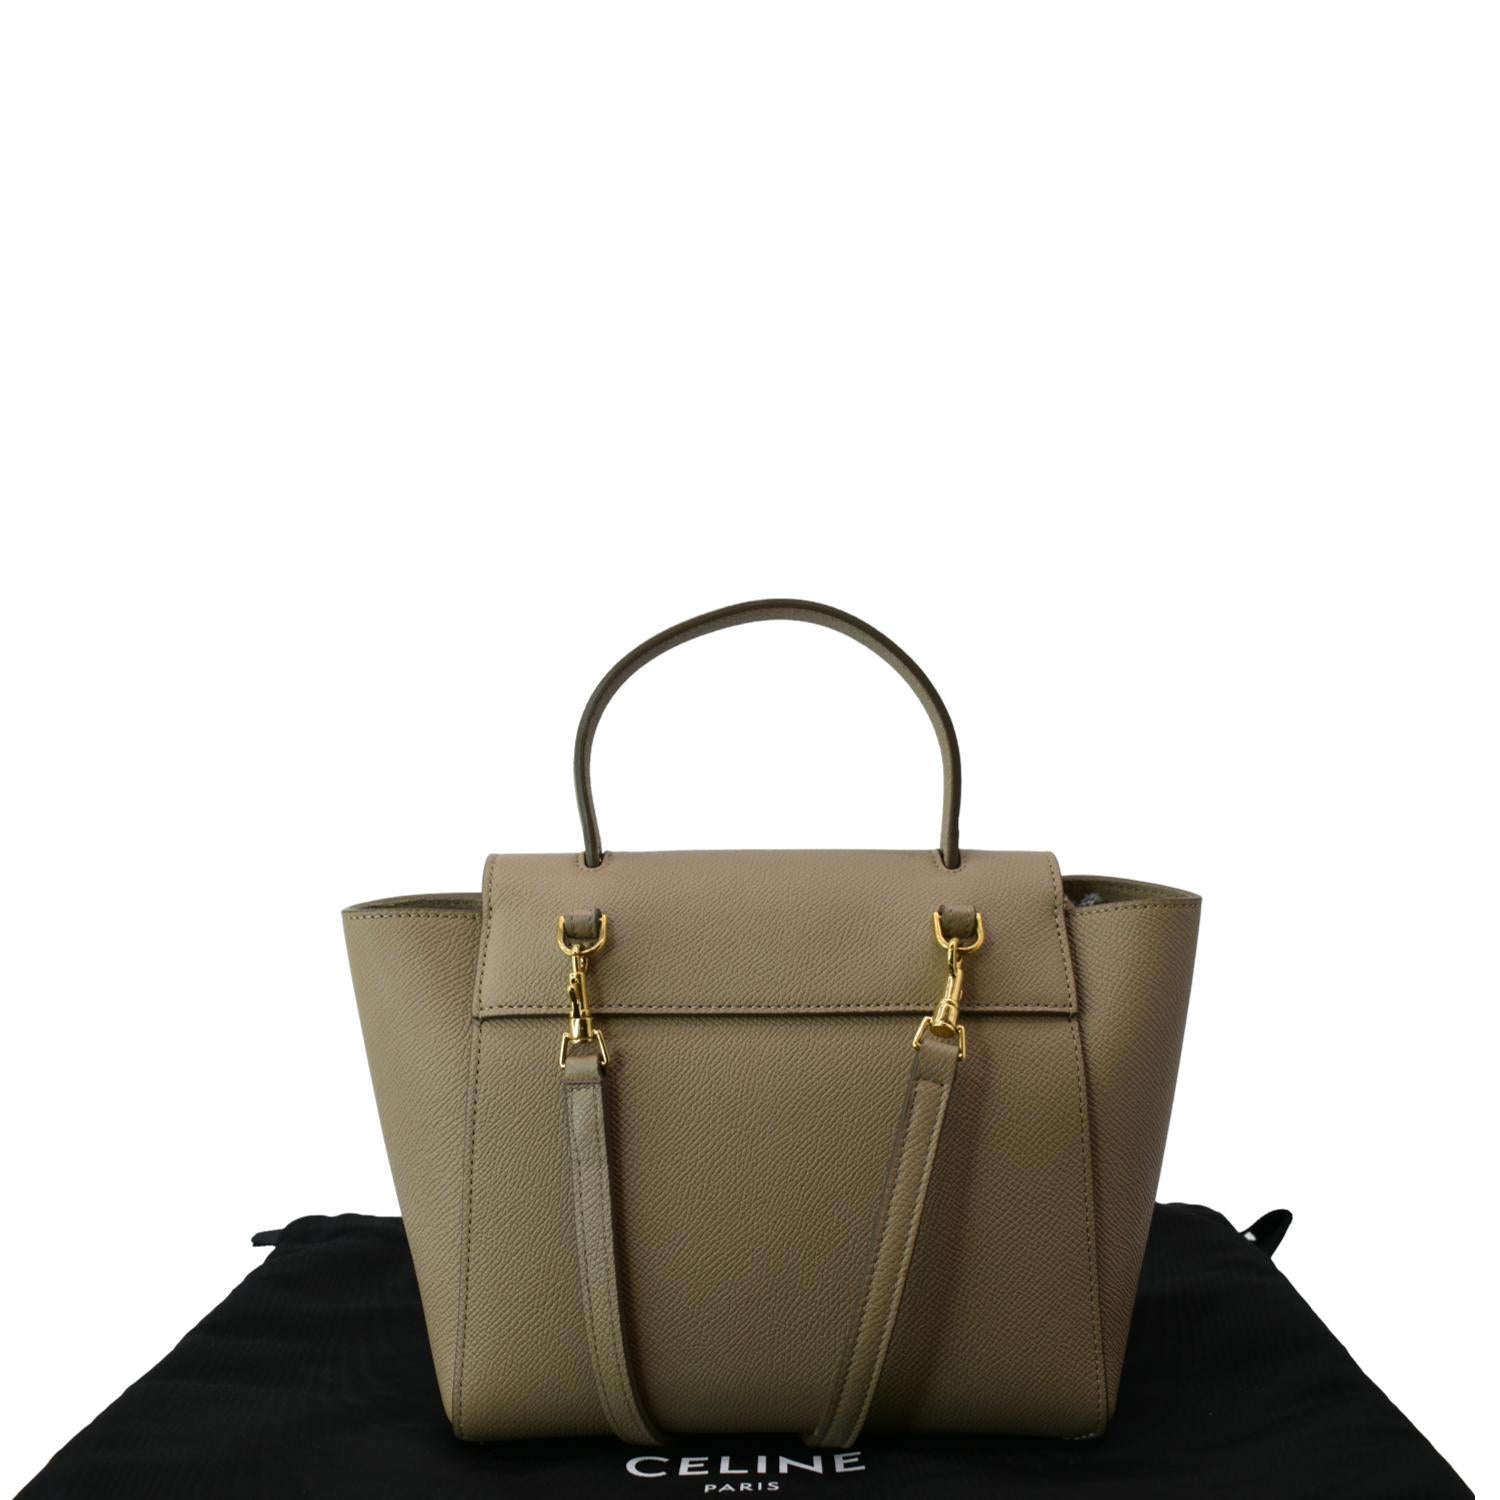 Celine belt bag shoulder handbag Color Gray Ladies used from japan